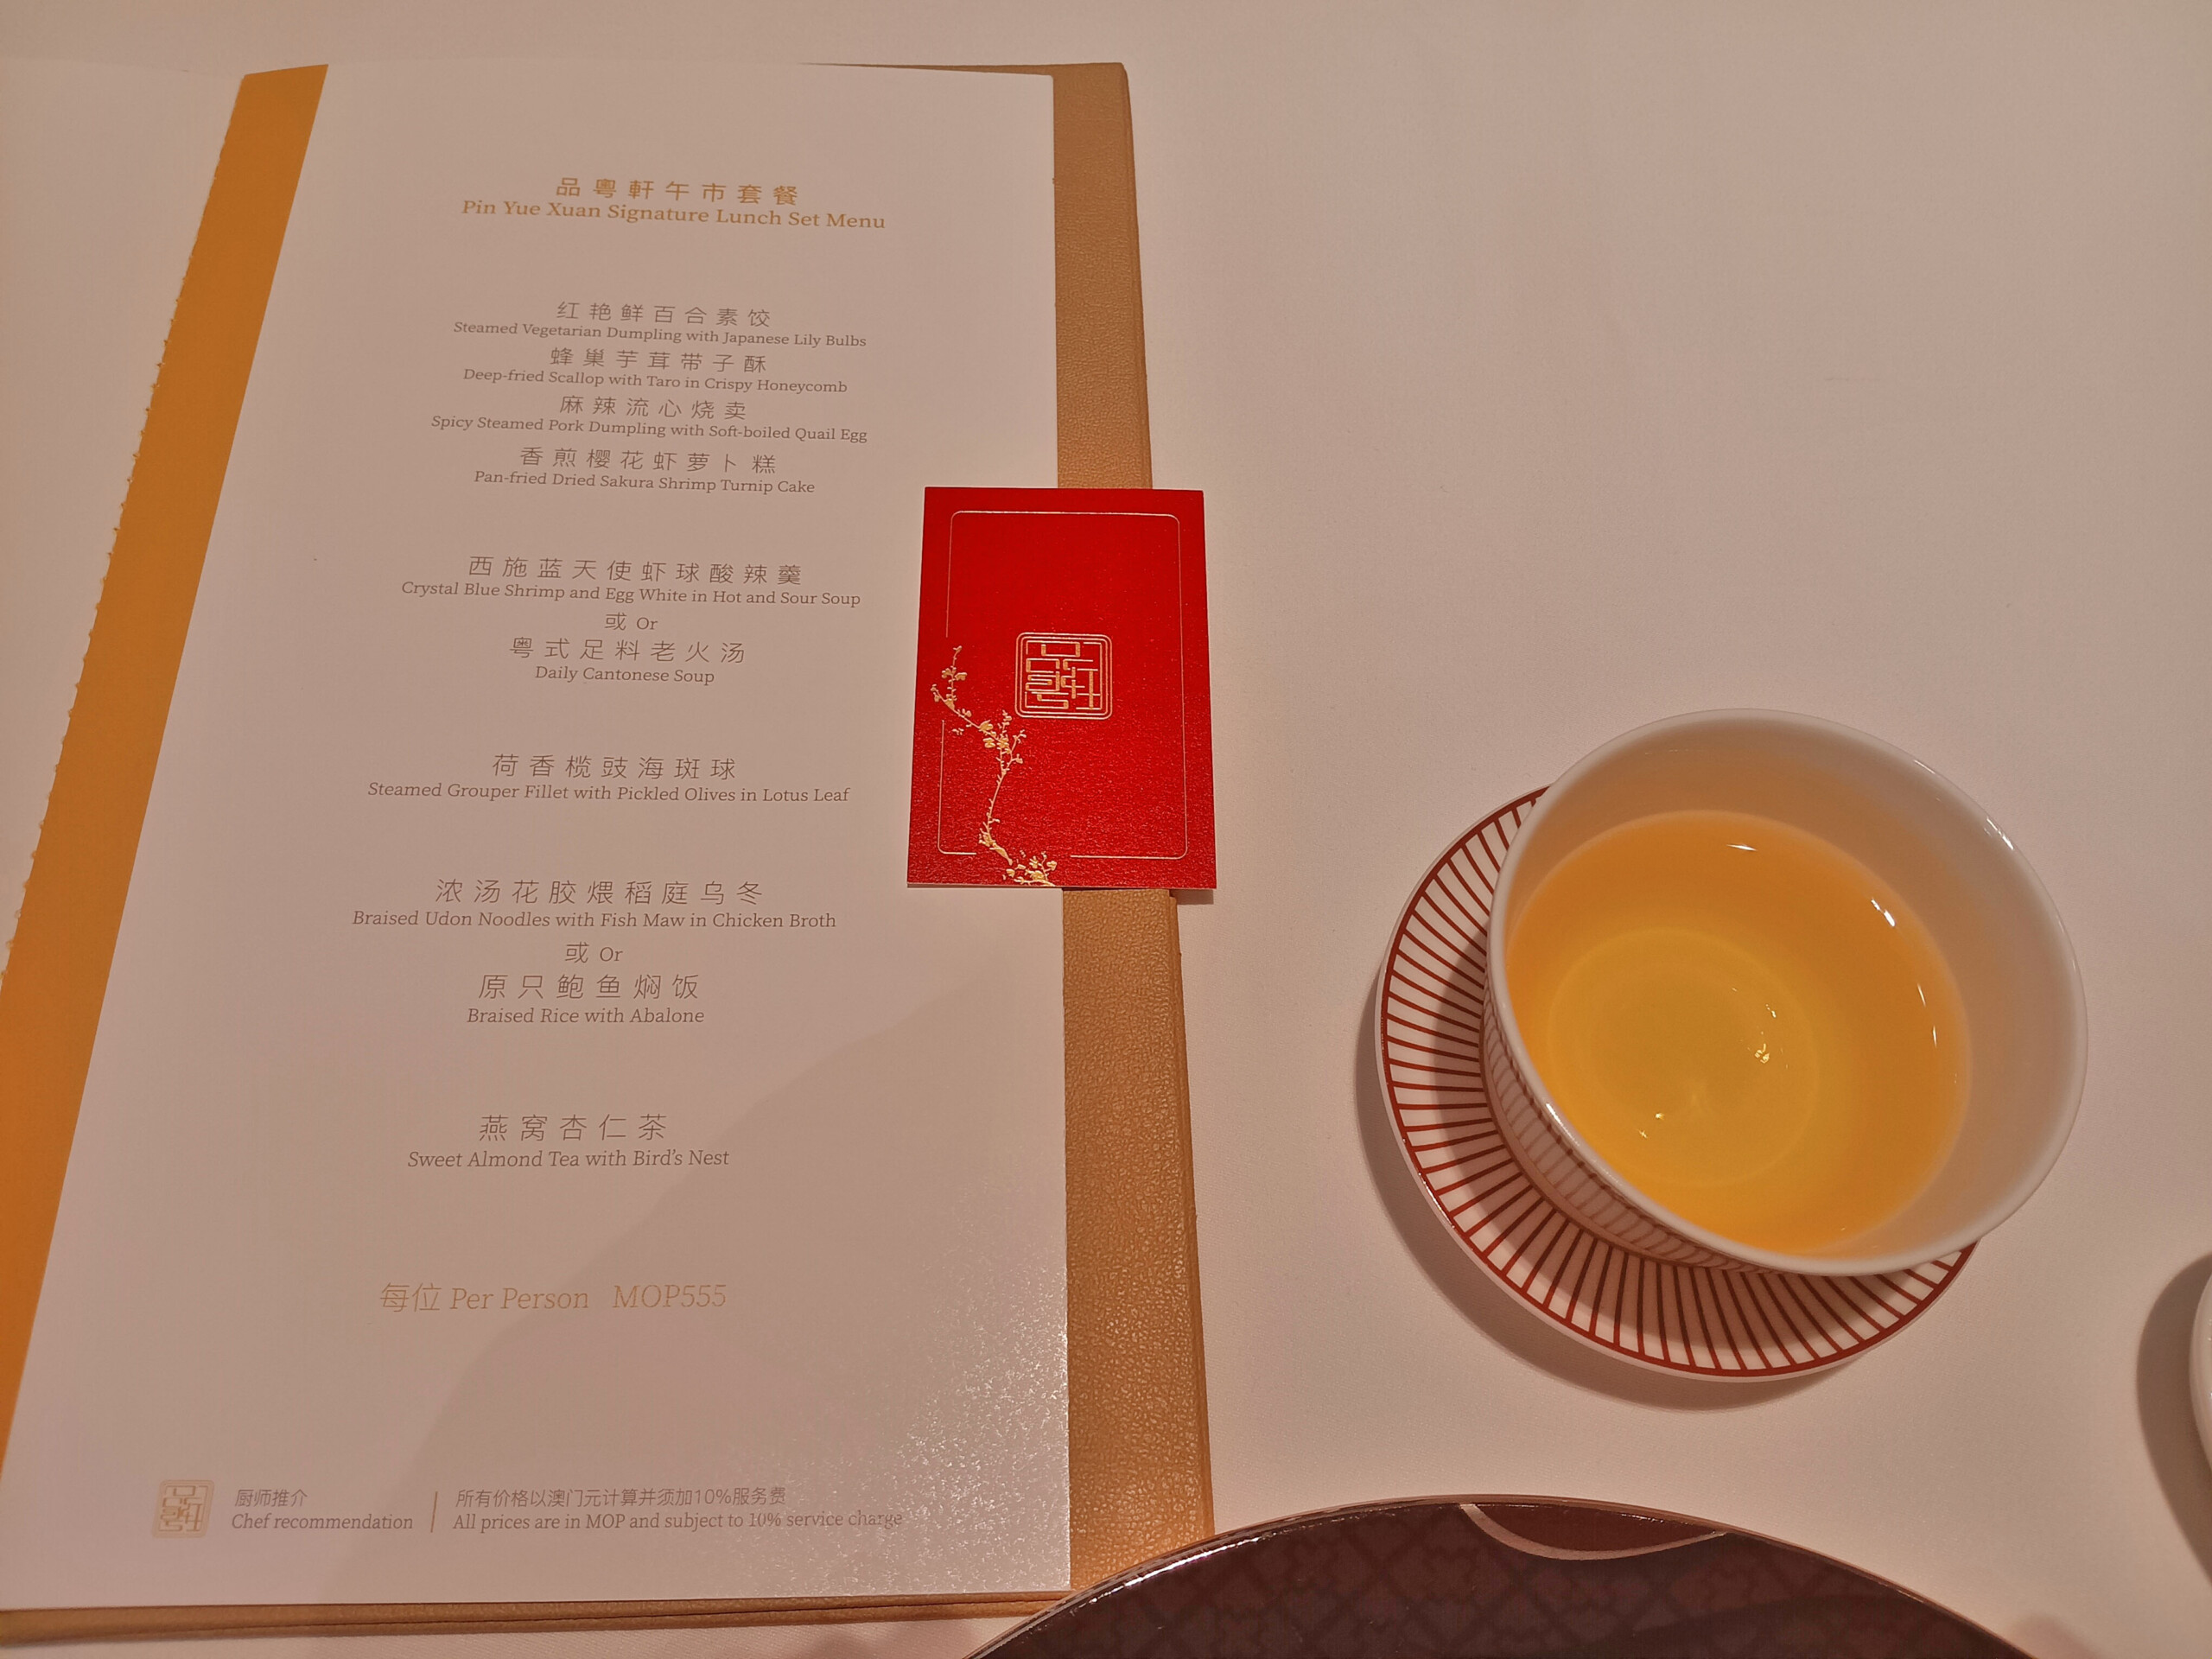 Pin Yue Xuan tasting menu with Longjing tea